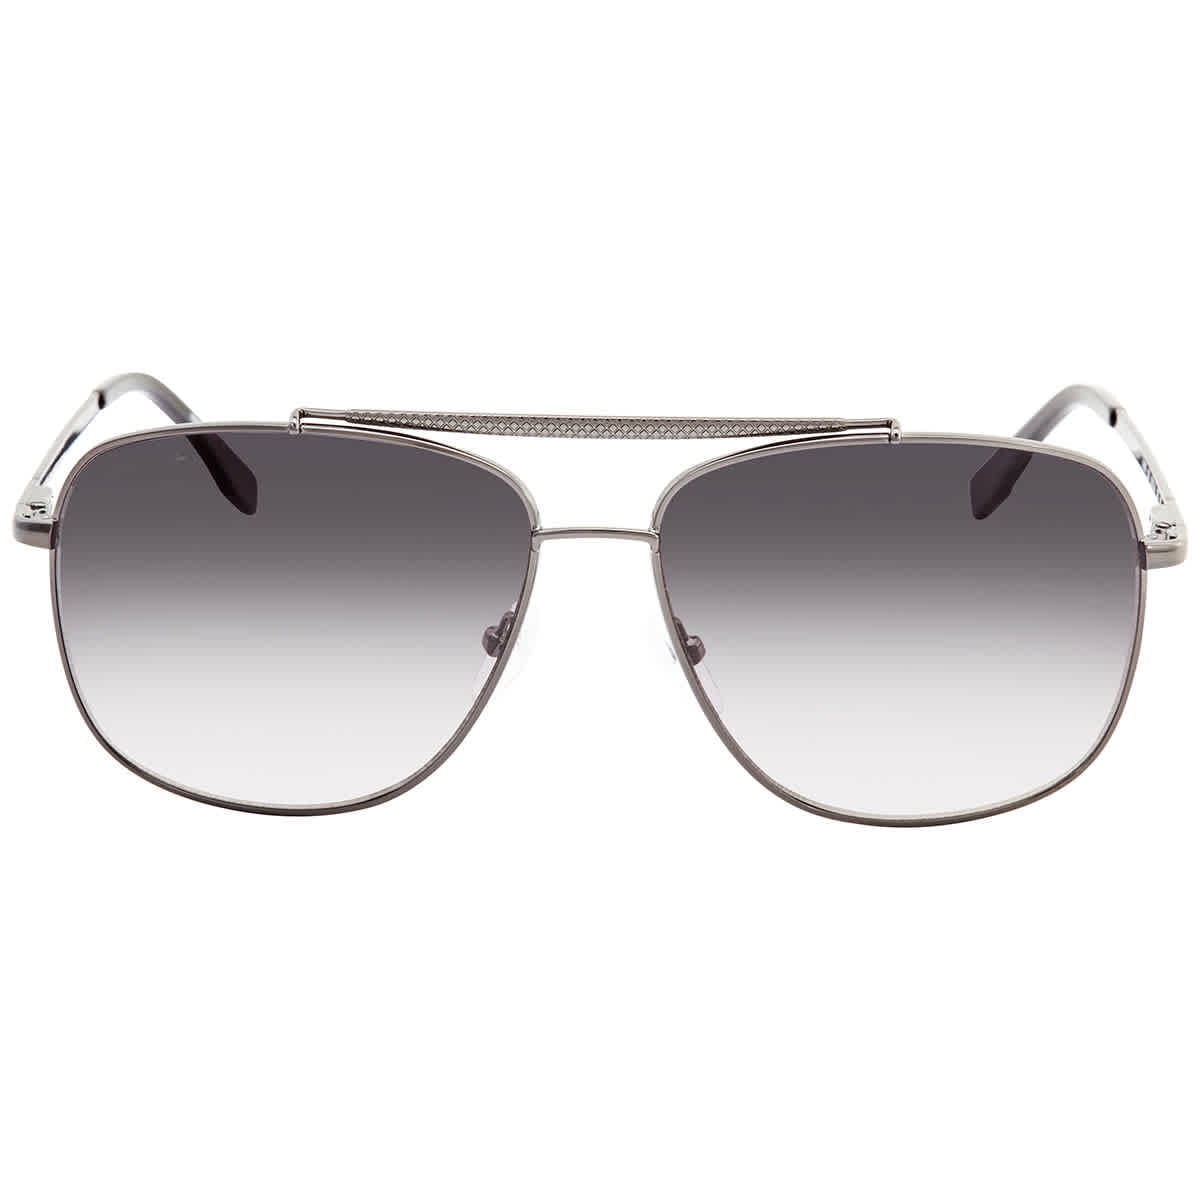 Lacoste Grey Rectangular Men's Sunglasses L188S 033 59 - Walmart.com